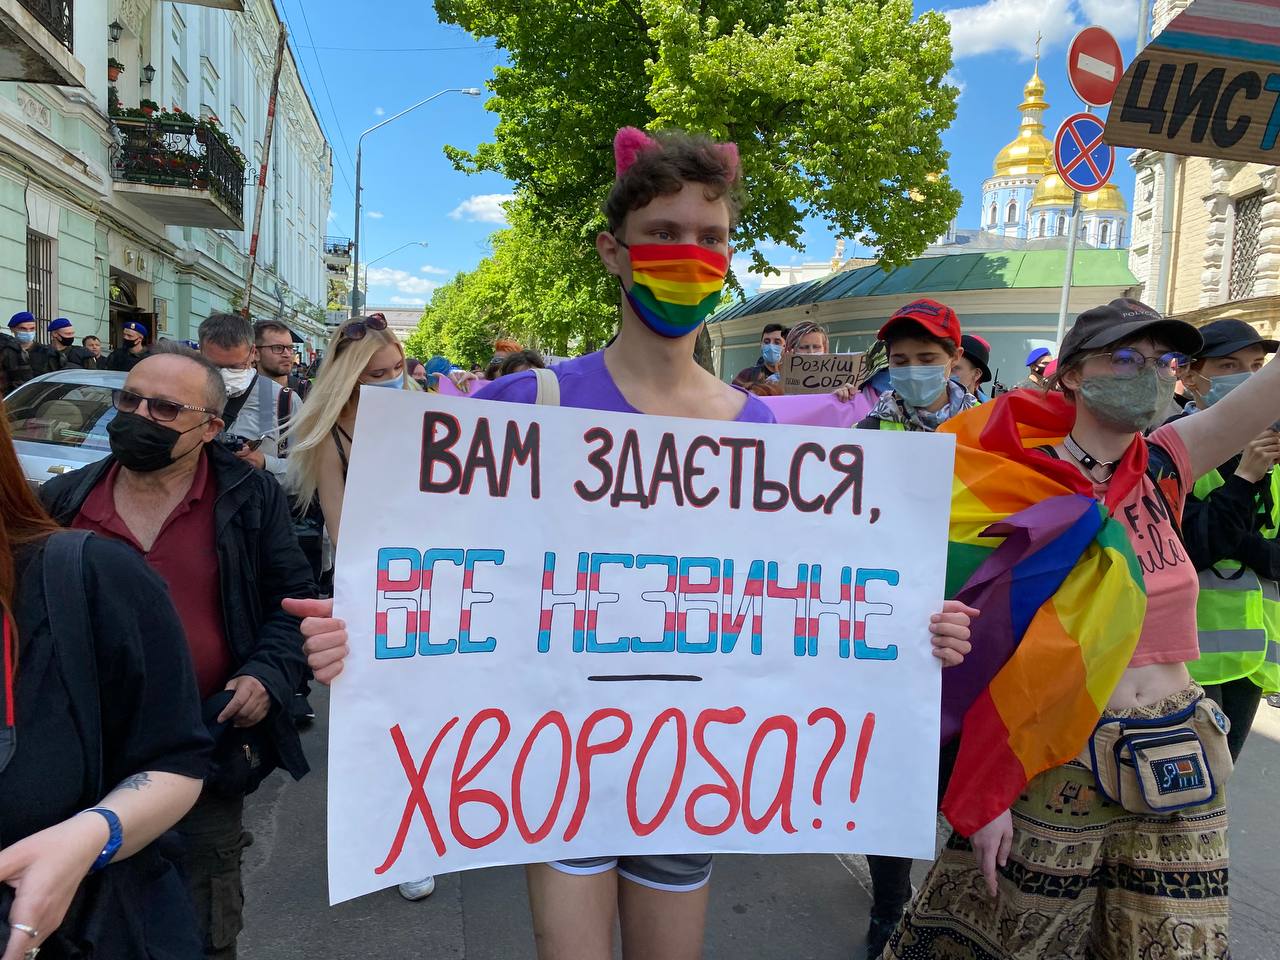 «Психіатрична експертиза — це принизливо»: у Києві пройшов марш проти трансфобії